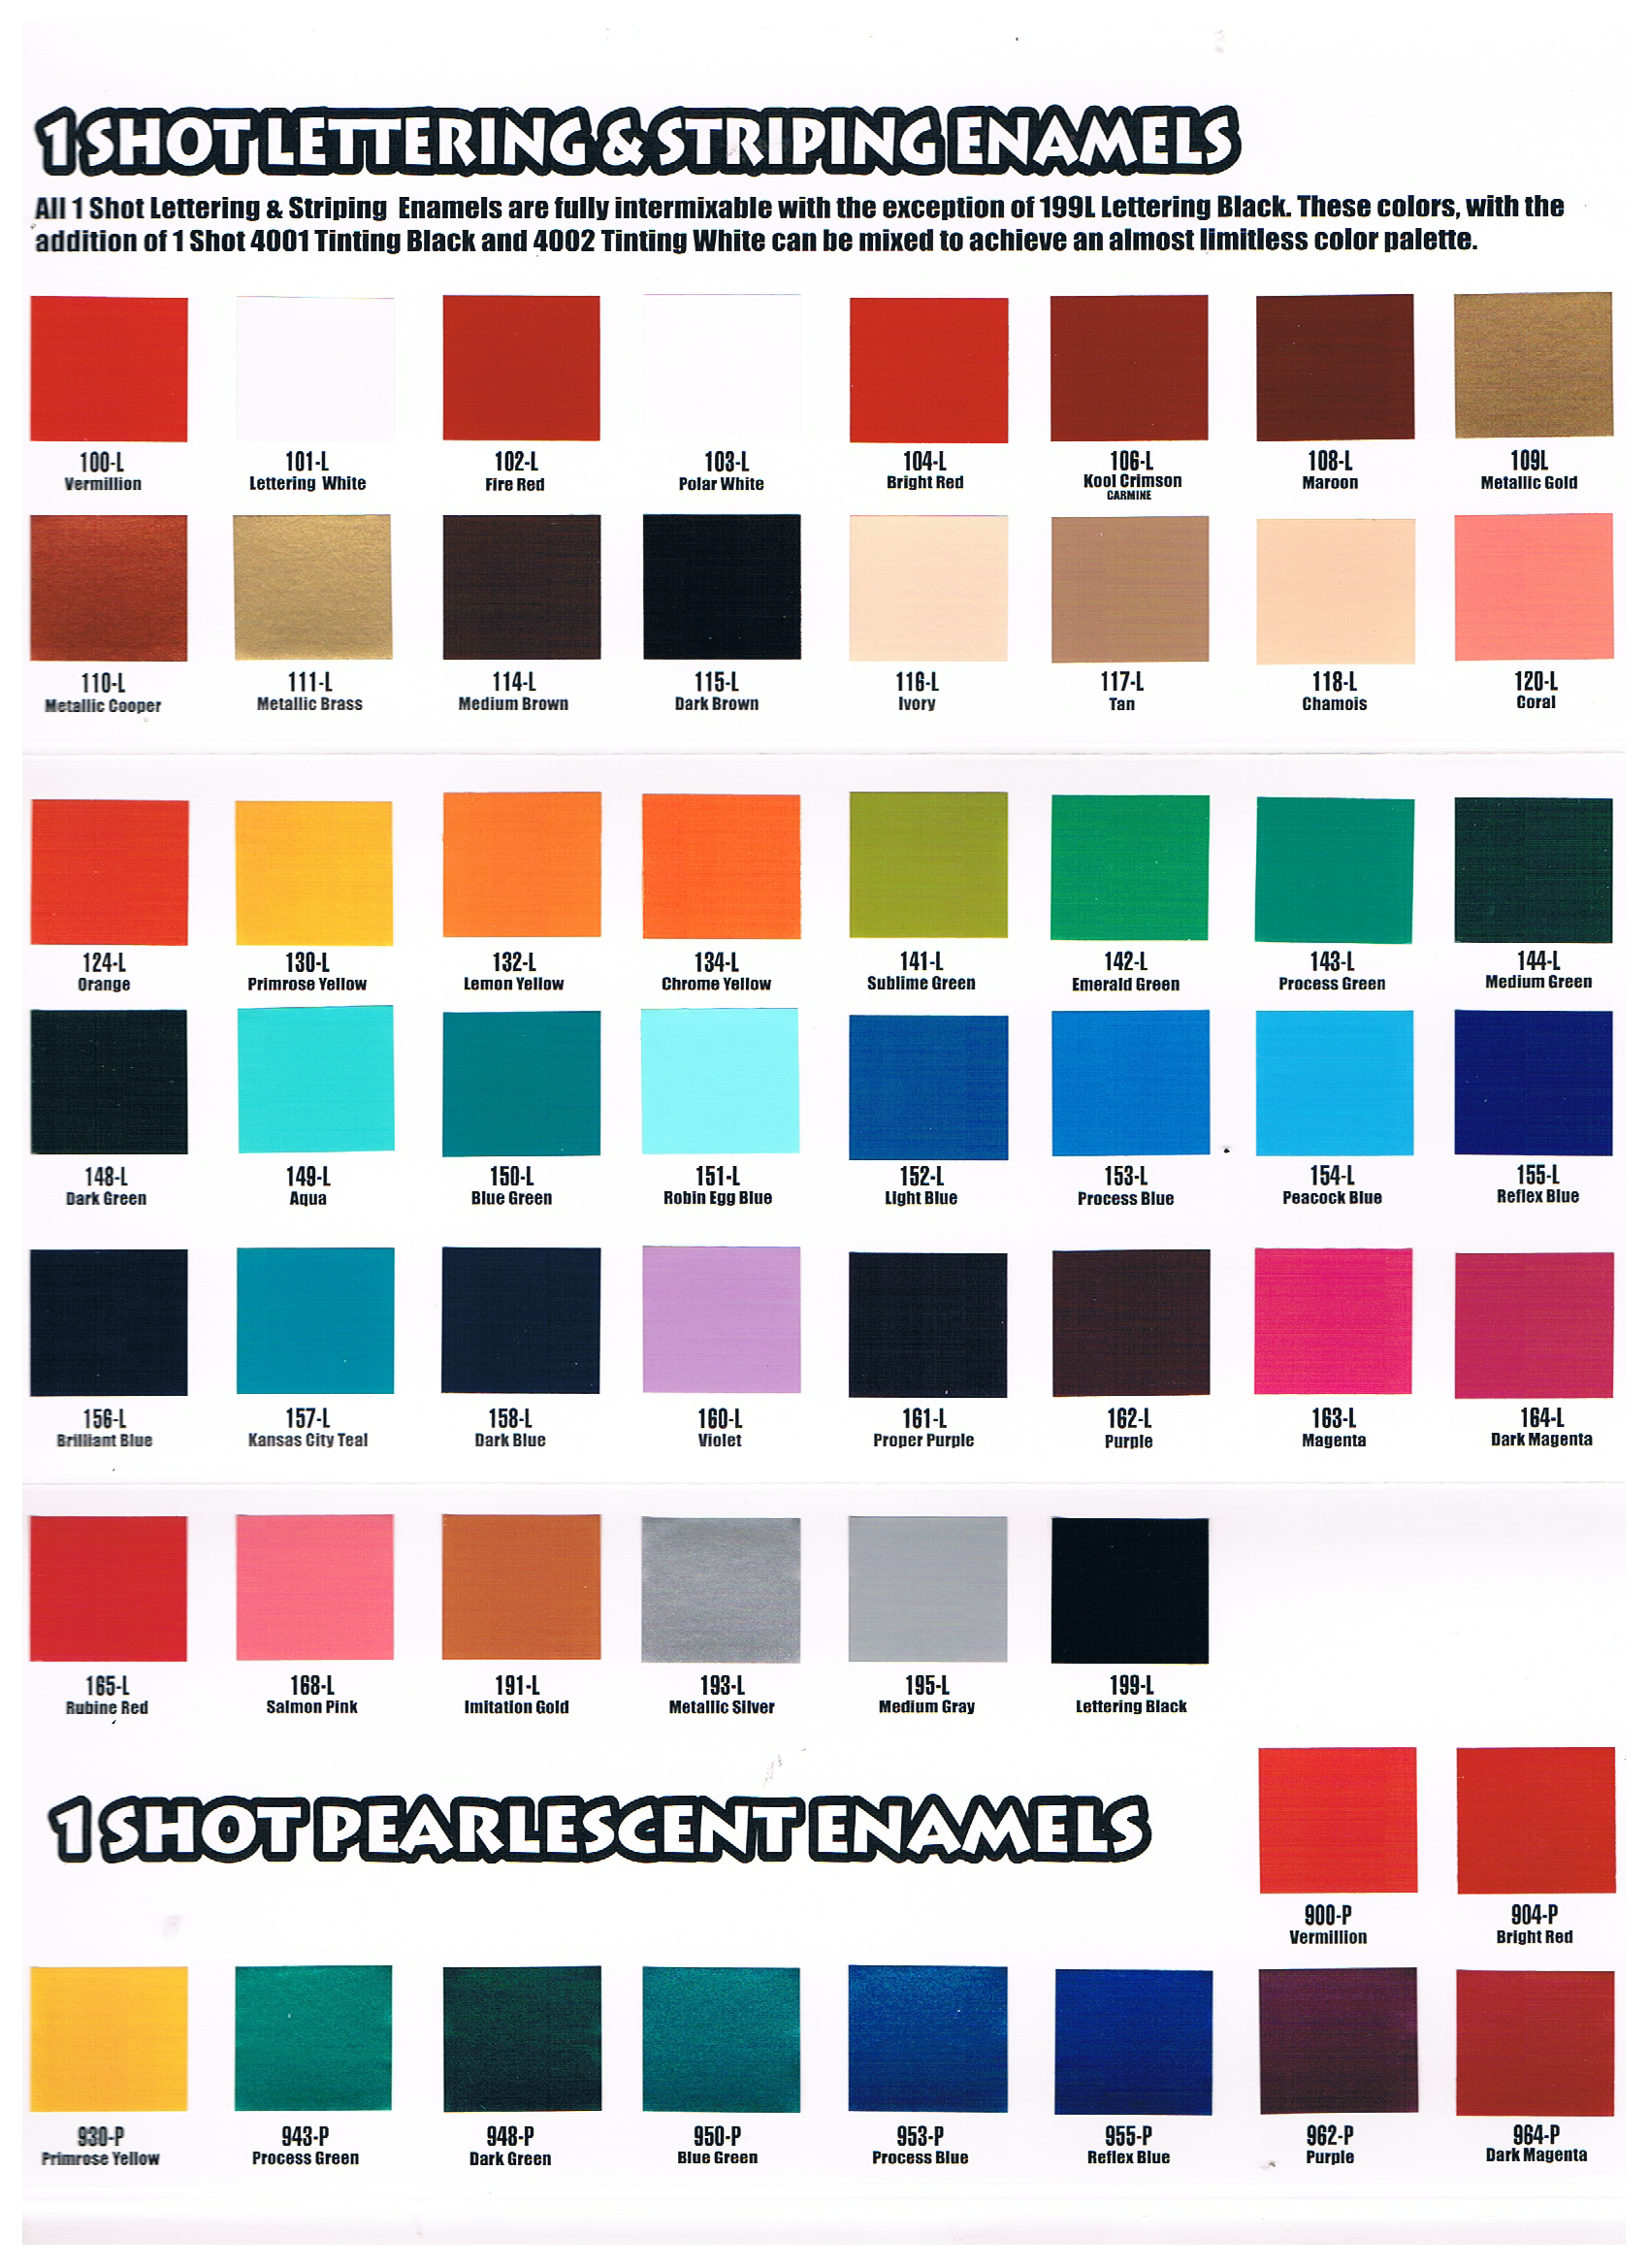 1 Shot Paint Color Chart